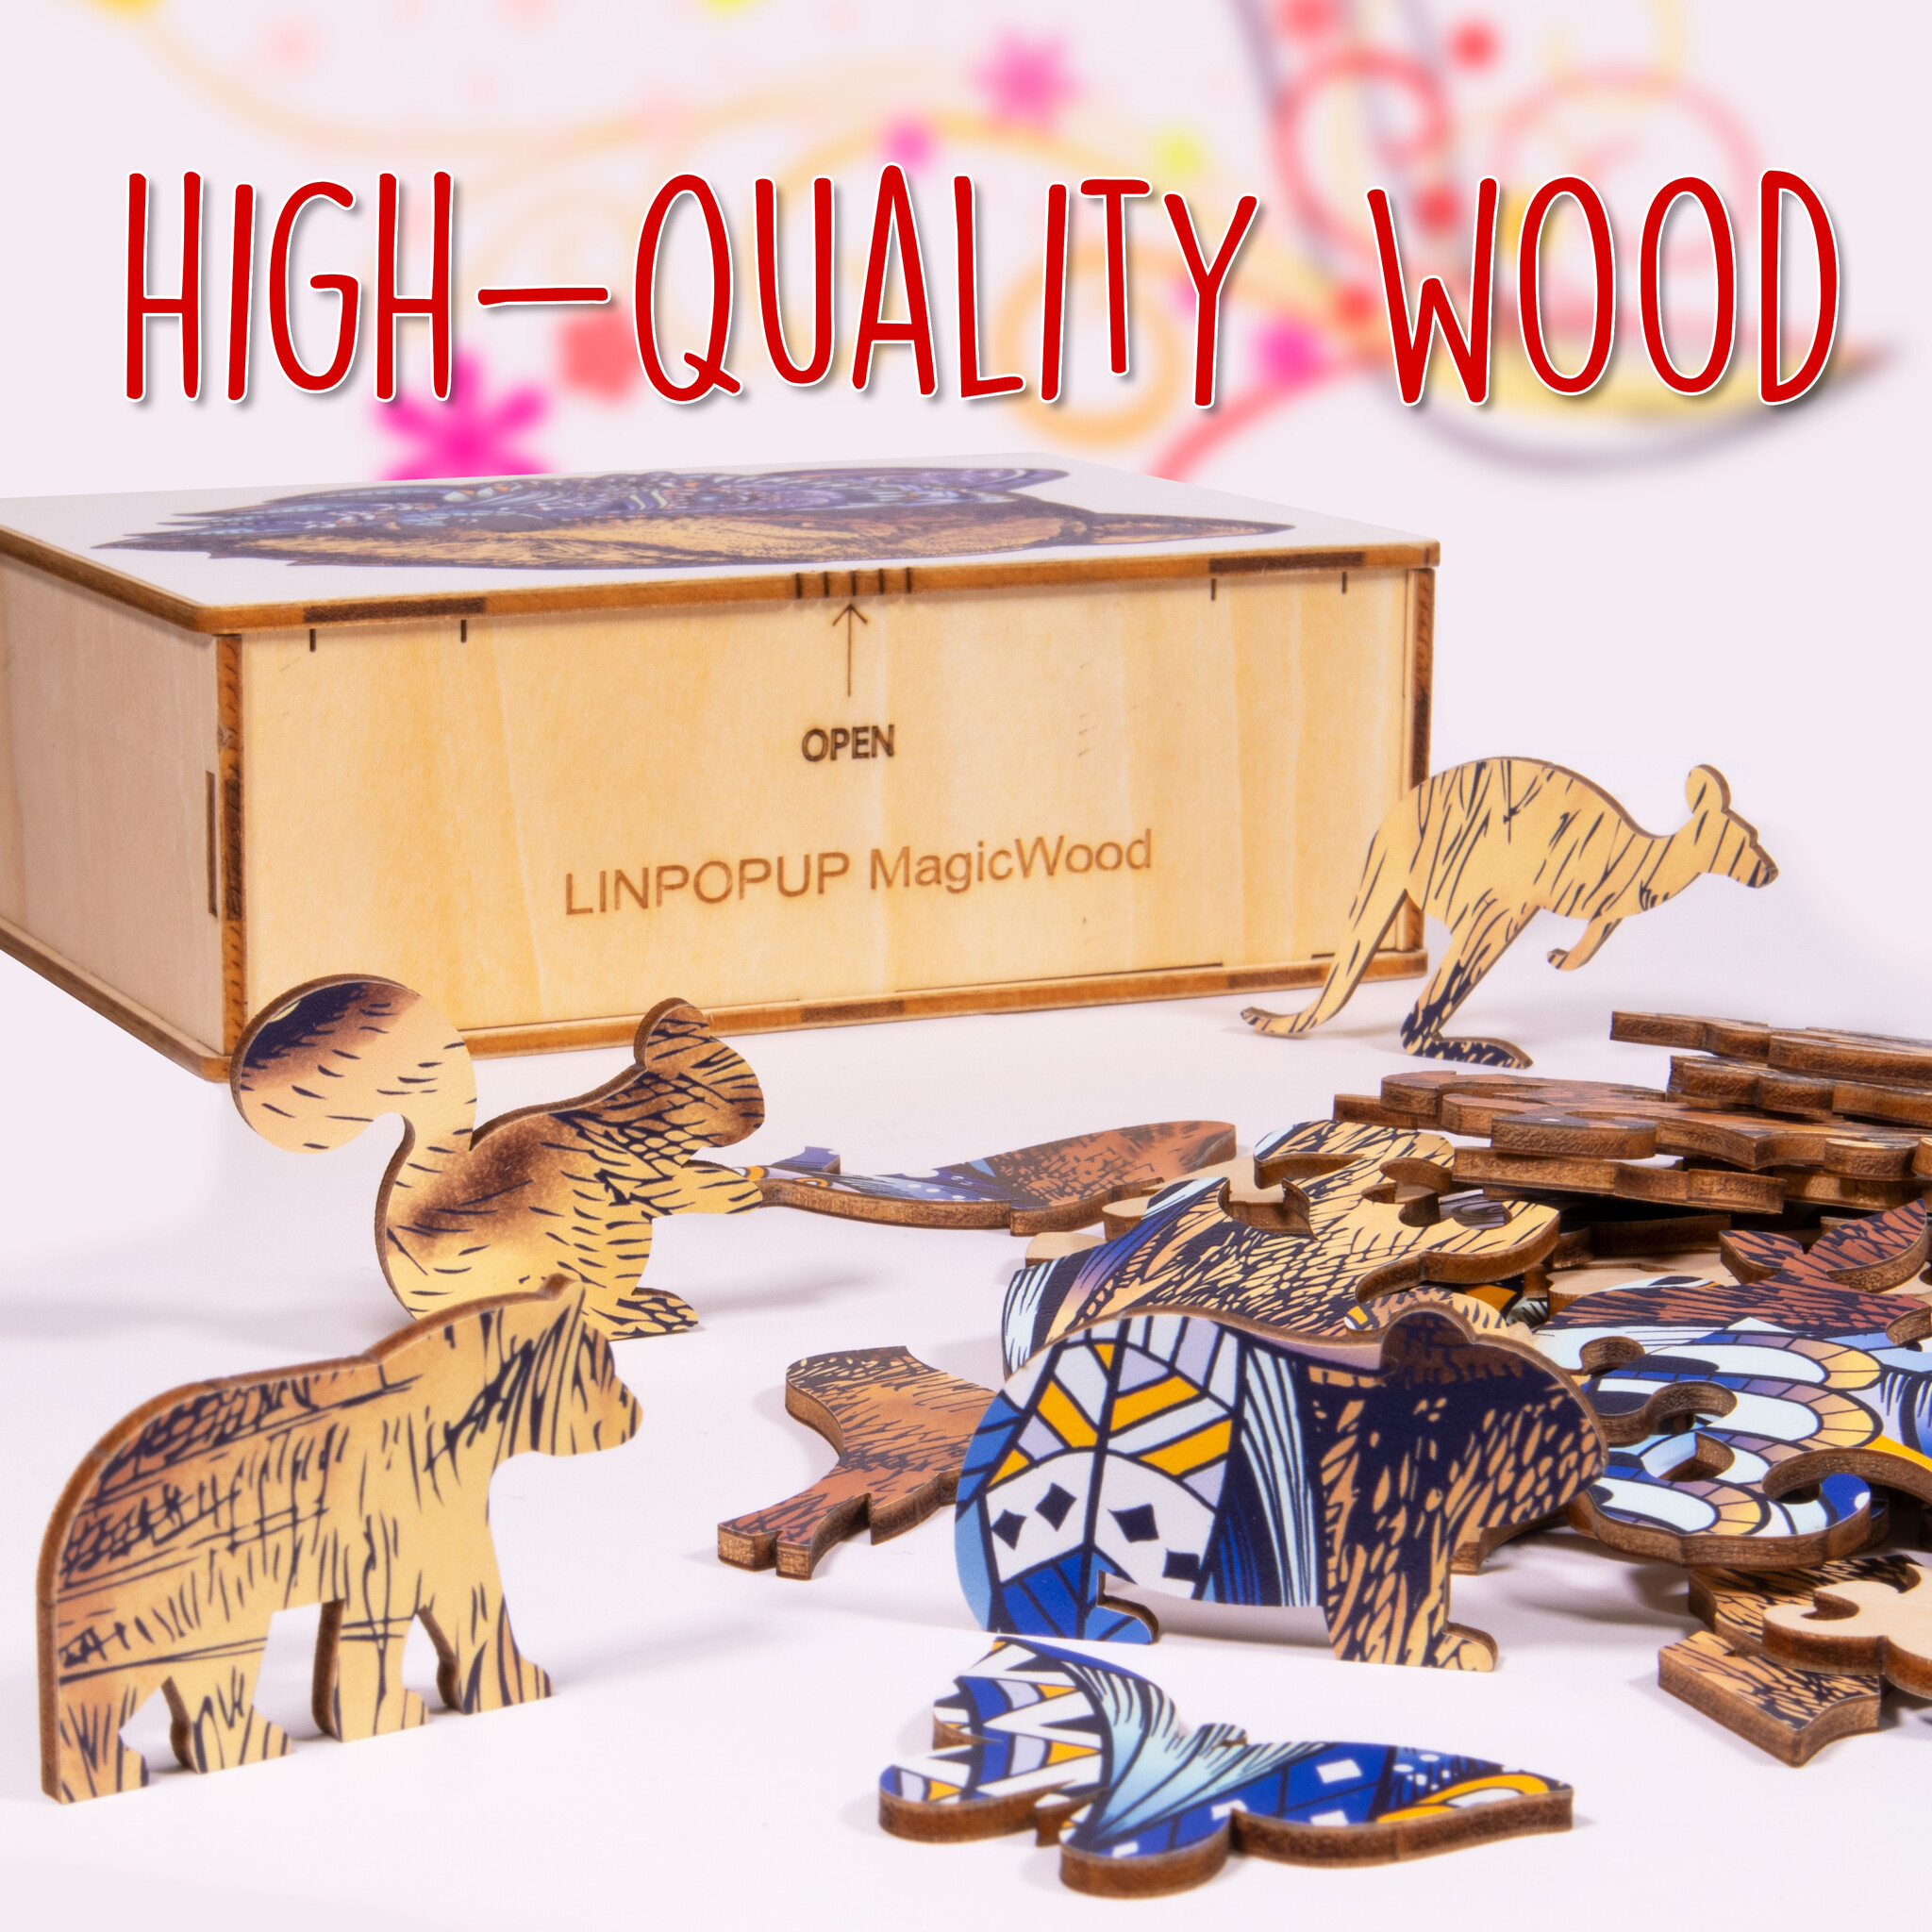 MagicWood Holzpuzzle für Erwachsene und Kinder, mit einzigartigen Tierform Puzzleteile, mit hochwertigem Geschenkbox aus Holz, als Geschenk zum Geburtstag, zur Einschulung, Holz Puzzle Wolf, N001